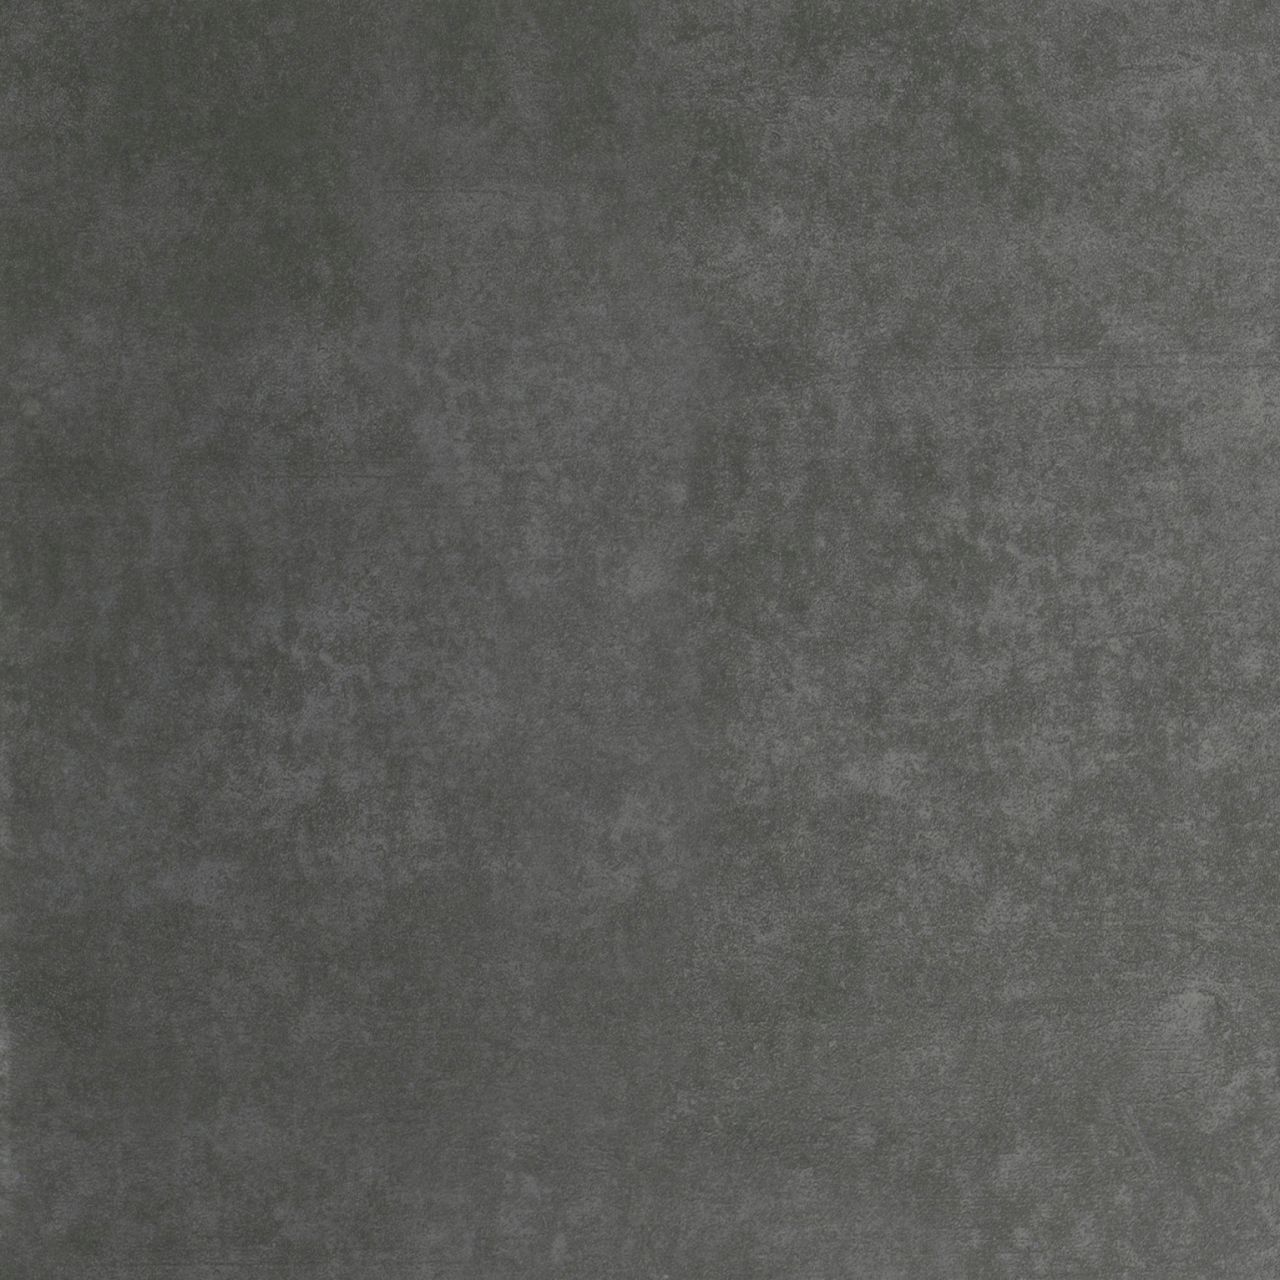 Bodenfliese Feinsteinzeug Global Concept 60 x 60 cm anthrazit lappato von Euro Stone